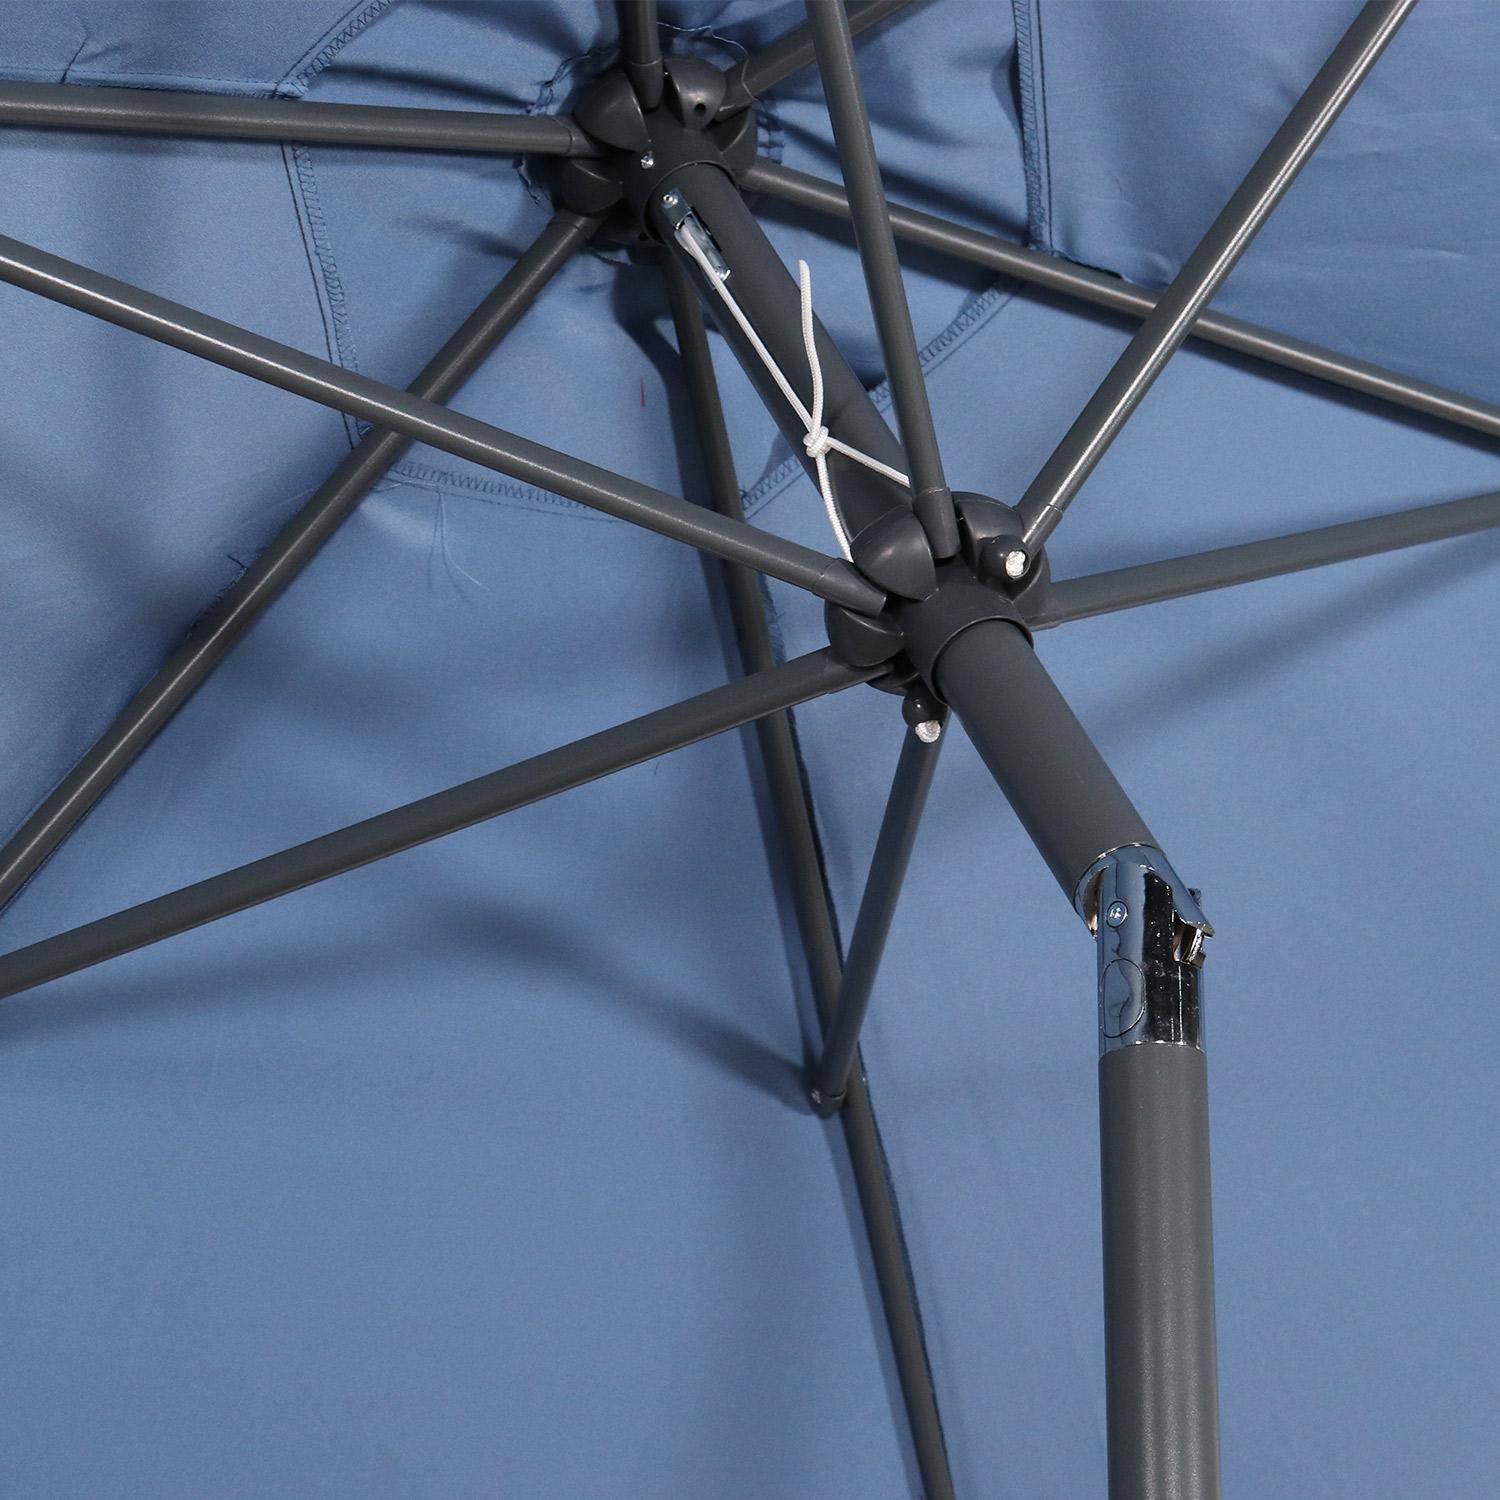 Parasol droit rond Ø300cm - Touquet Bleu grisé - mât central en aluminium orientable et manivelle d'ouverture,sweeek,Photo7